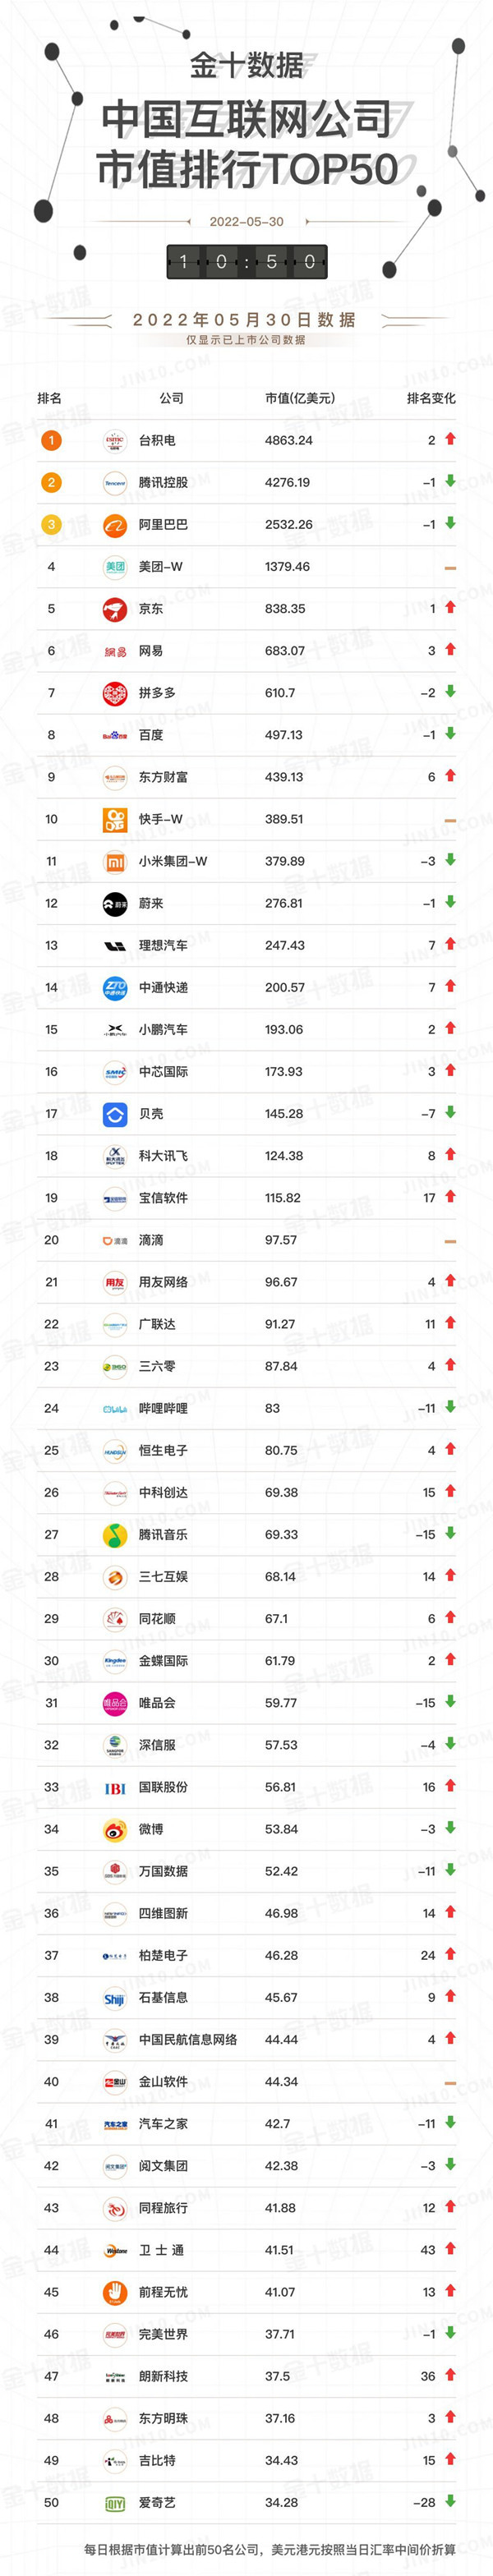 最新中国互联网公司市值排名来了 腾讯第二 阿里第三